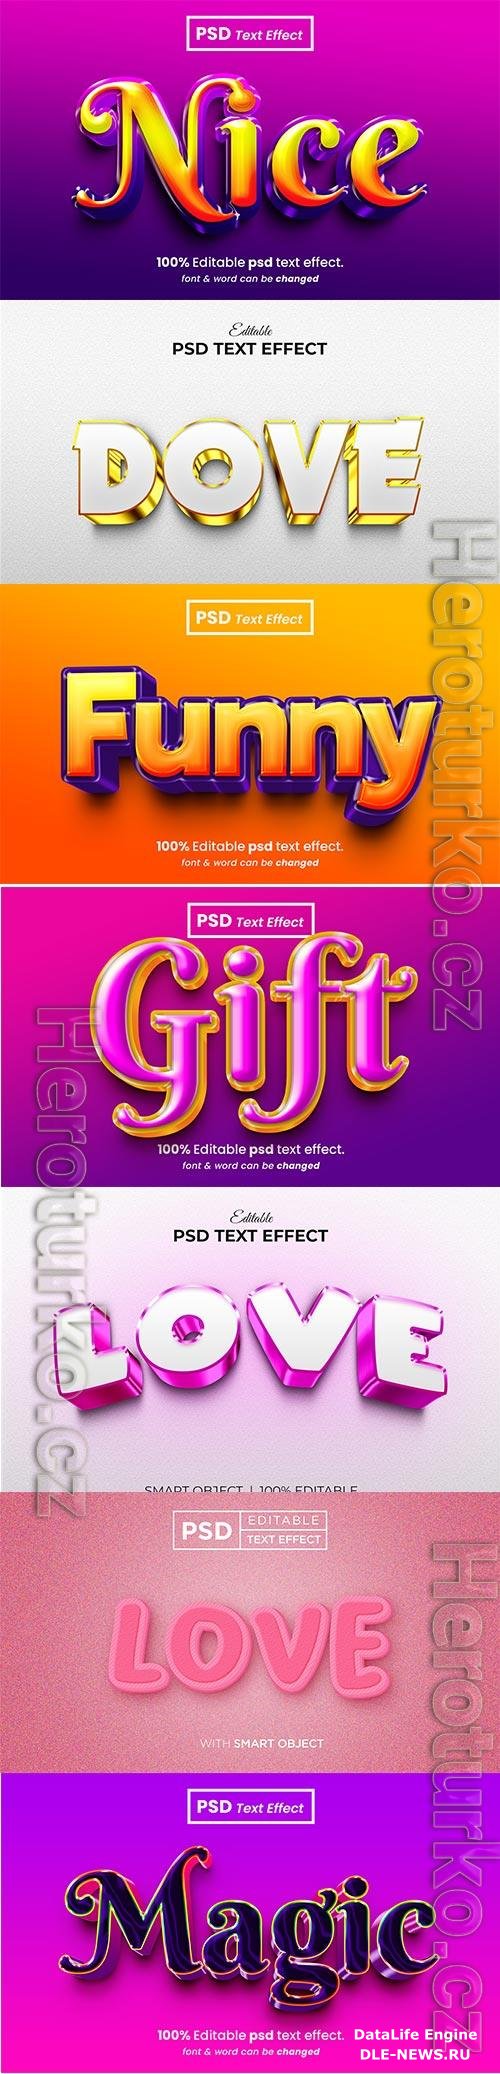 Psd text effect set vol 159